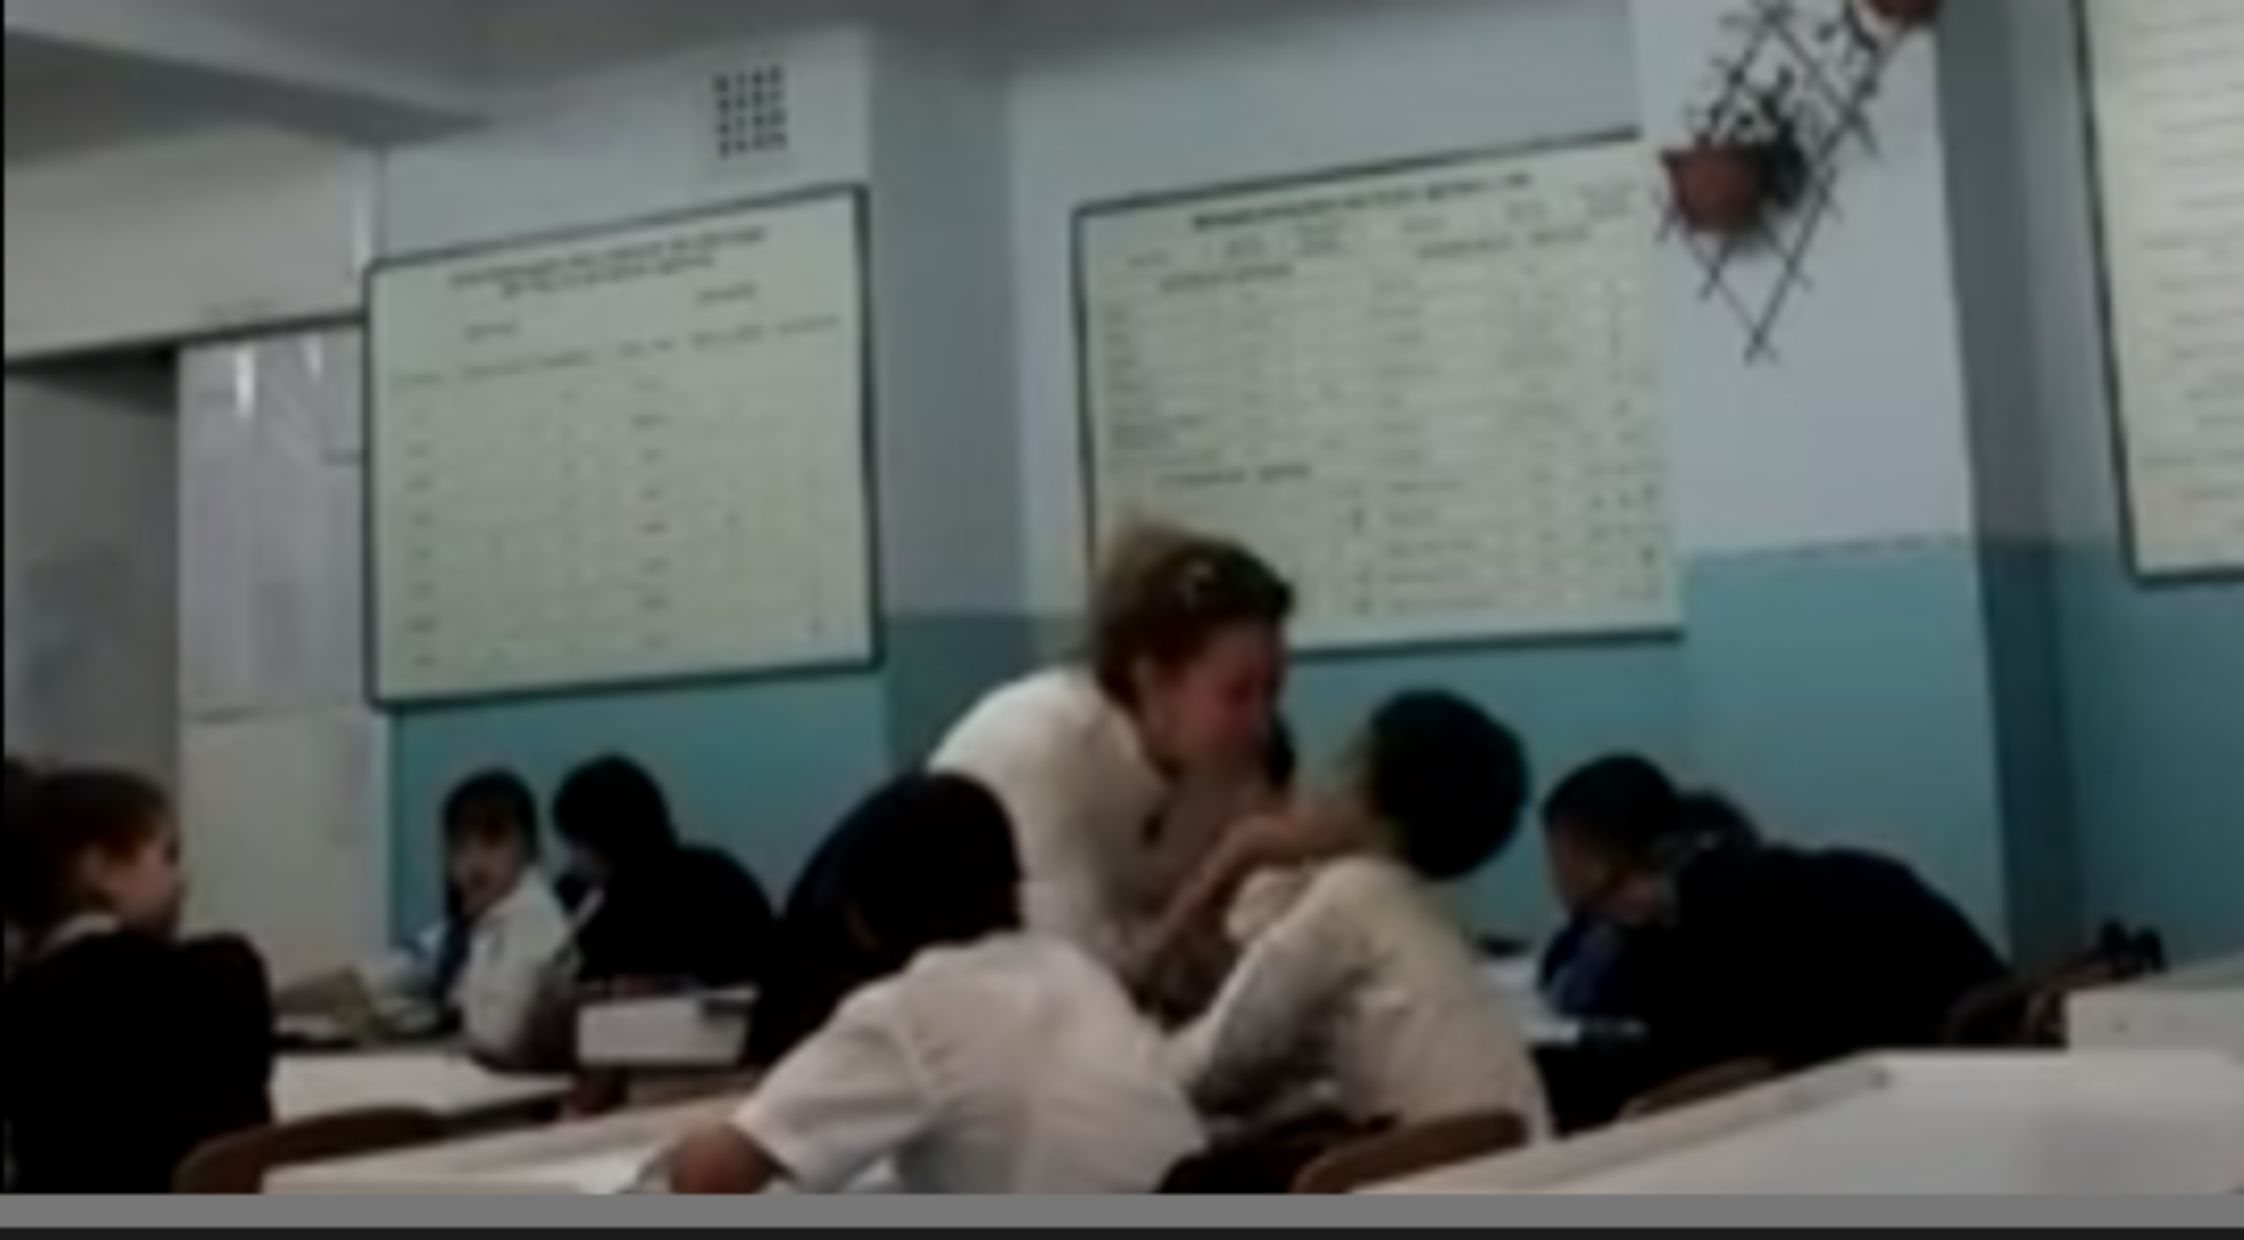 Видео с шокирующим методом воспитания учительницы в одной из казахстанских школ попало в сеть.